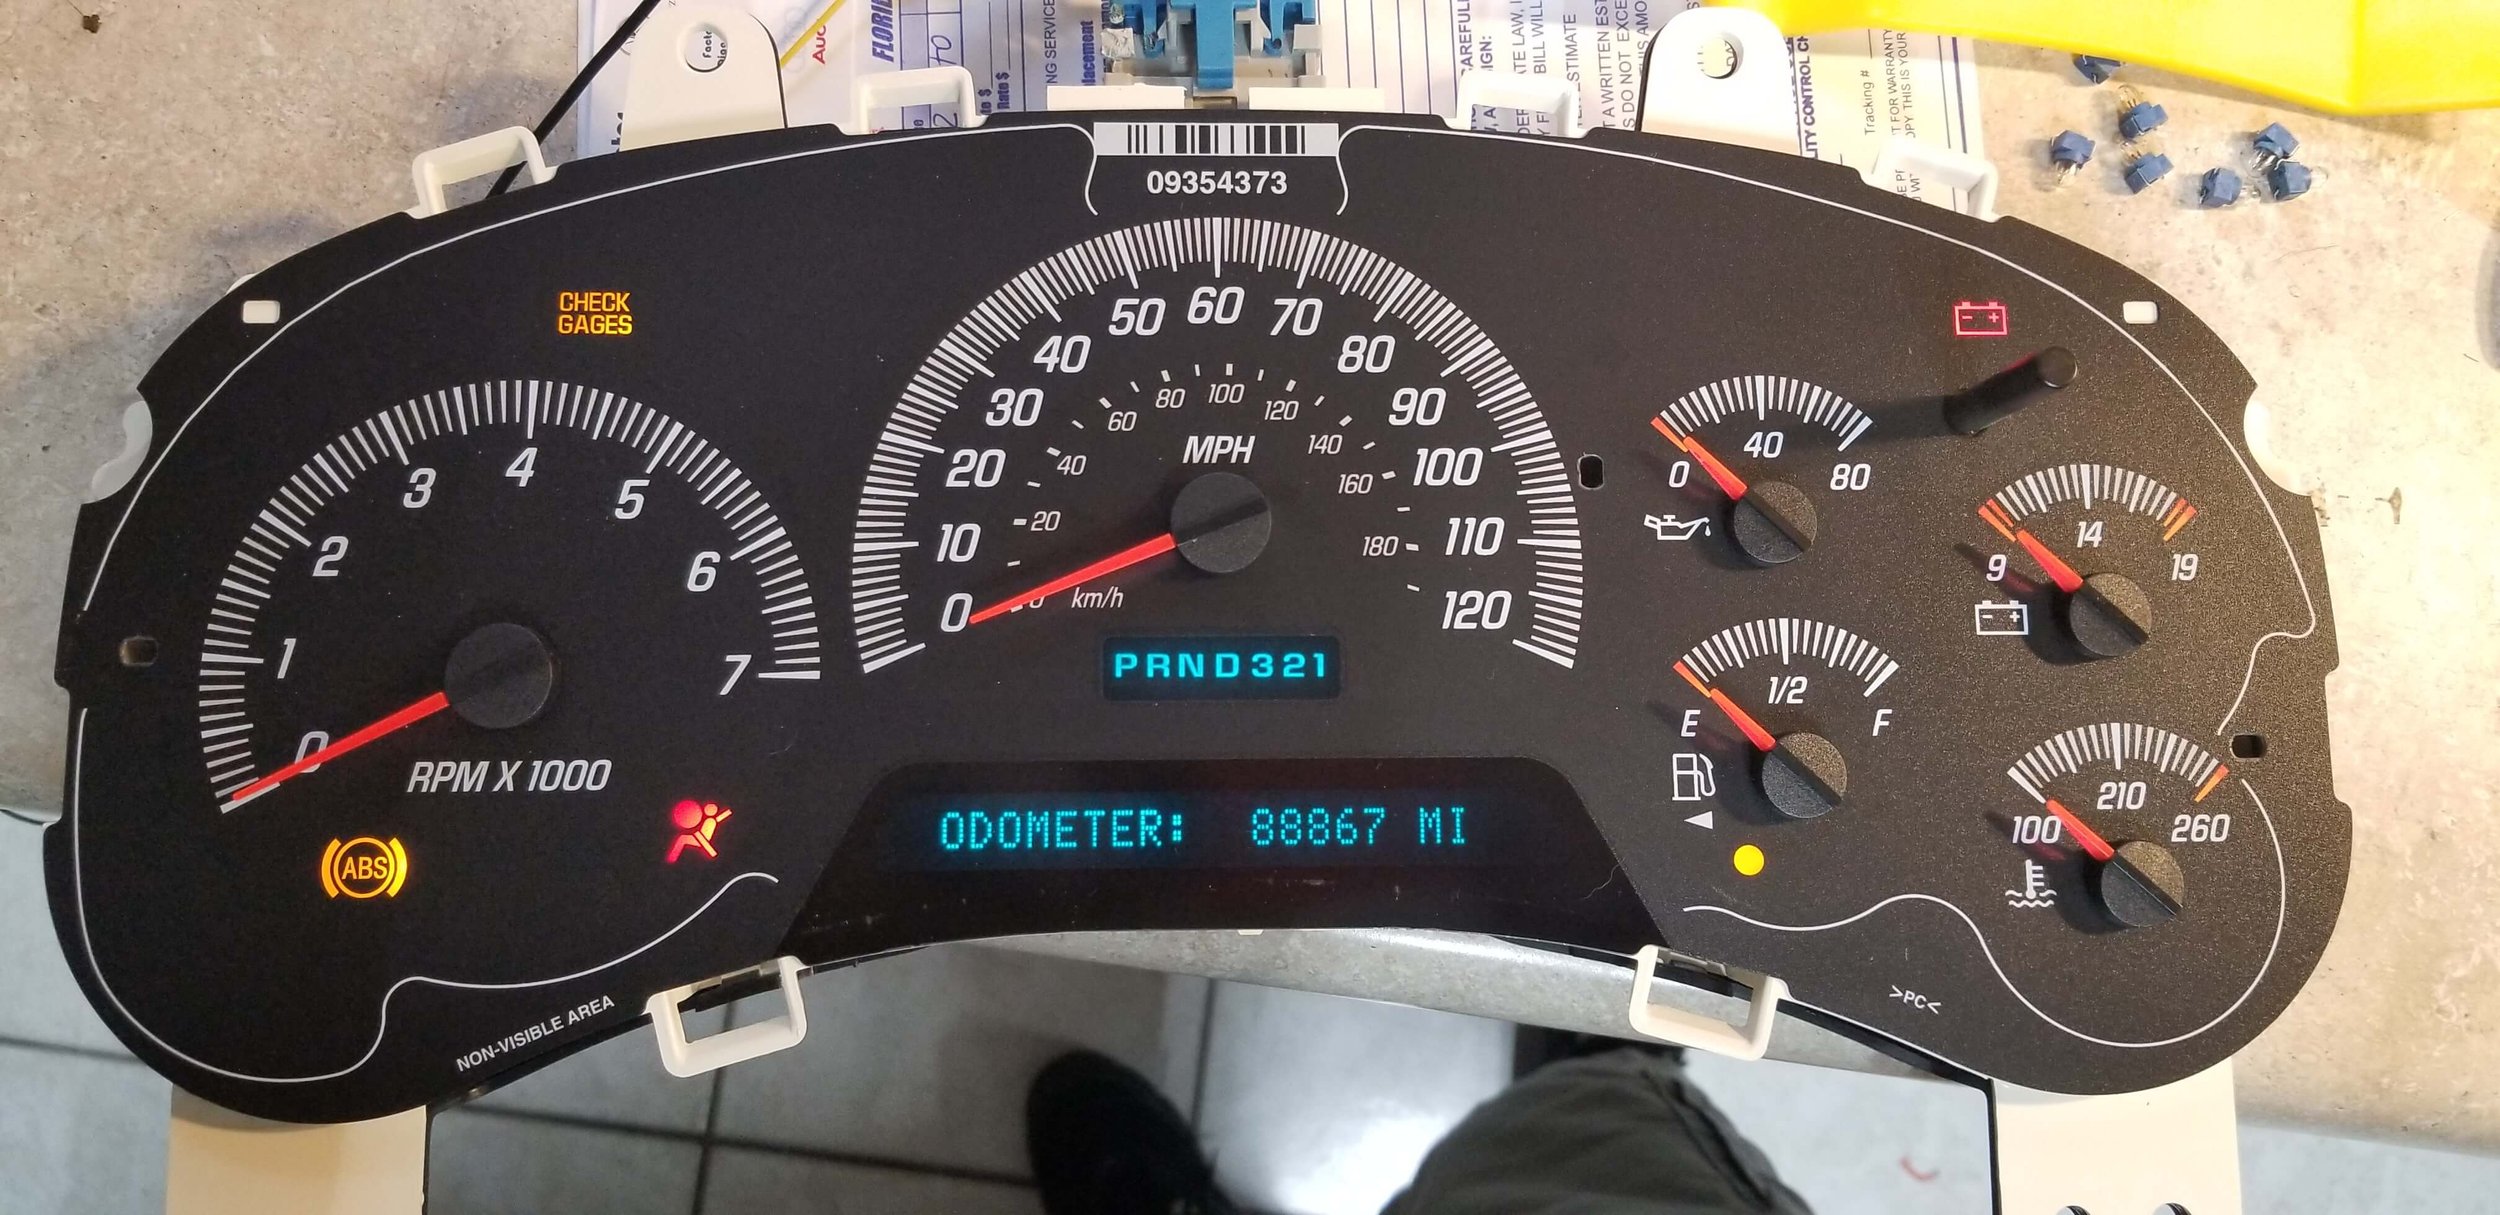 chevrolet trailblazer envoy speedometer sticking 2003-2006.jpg